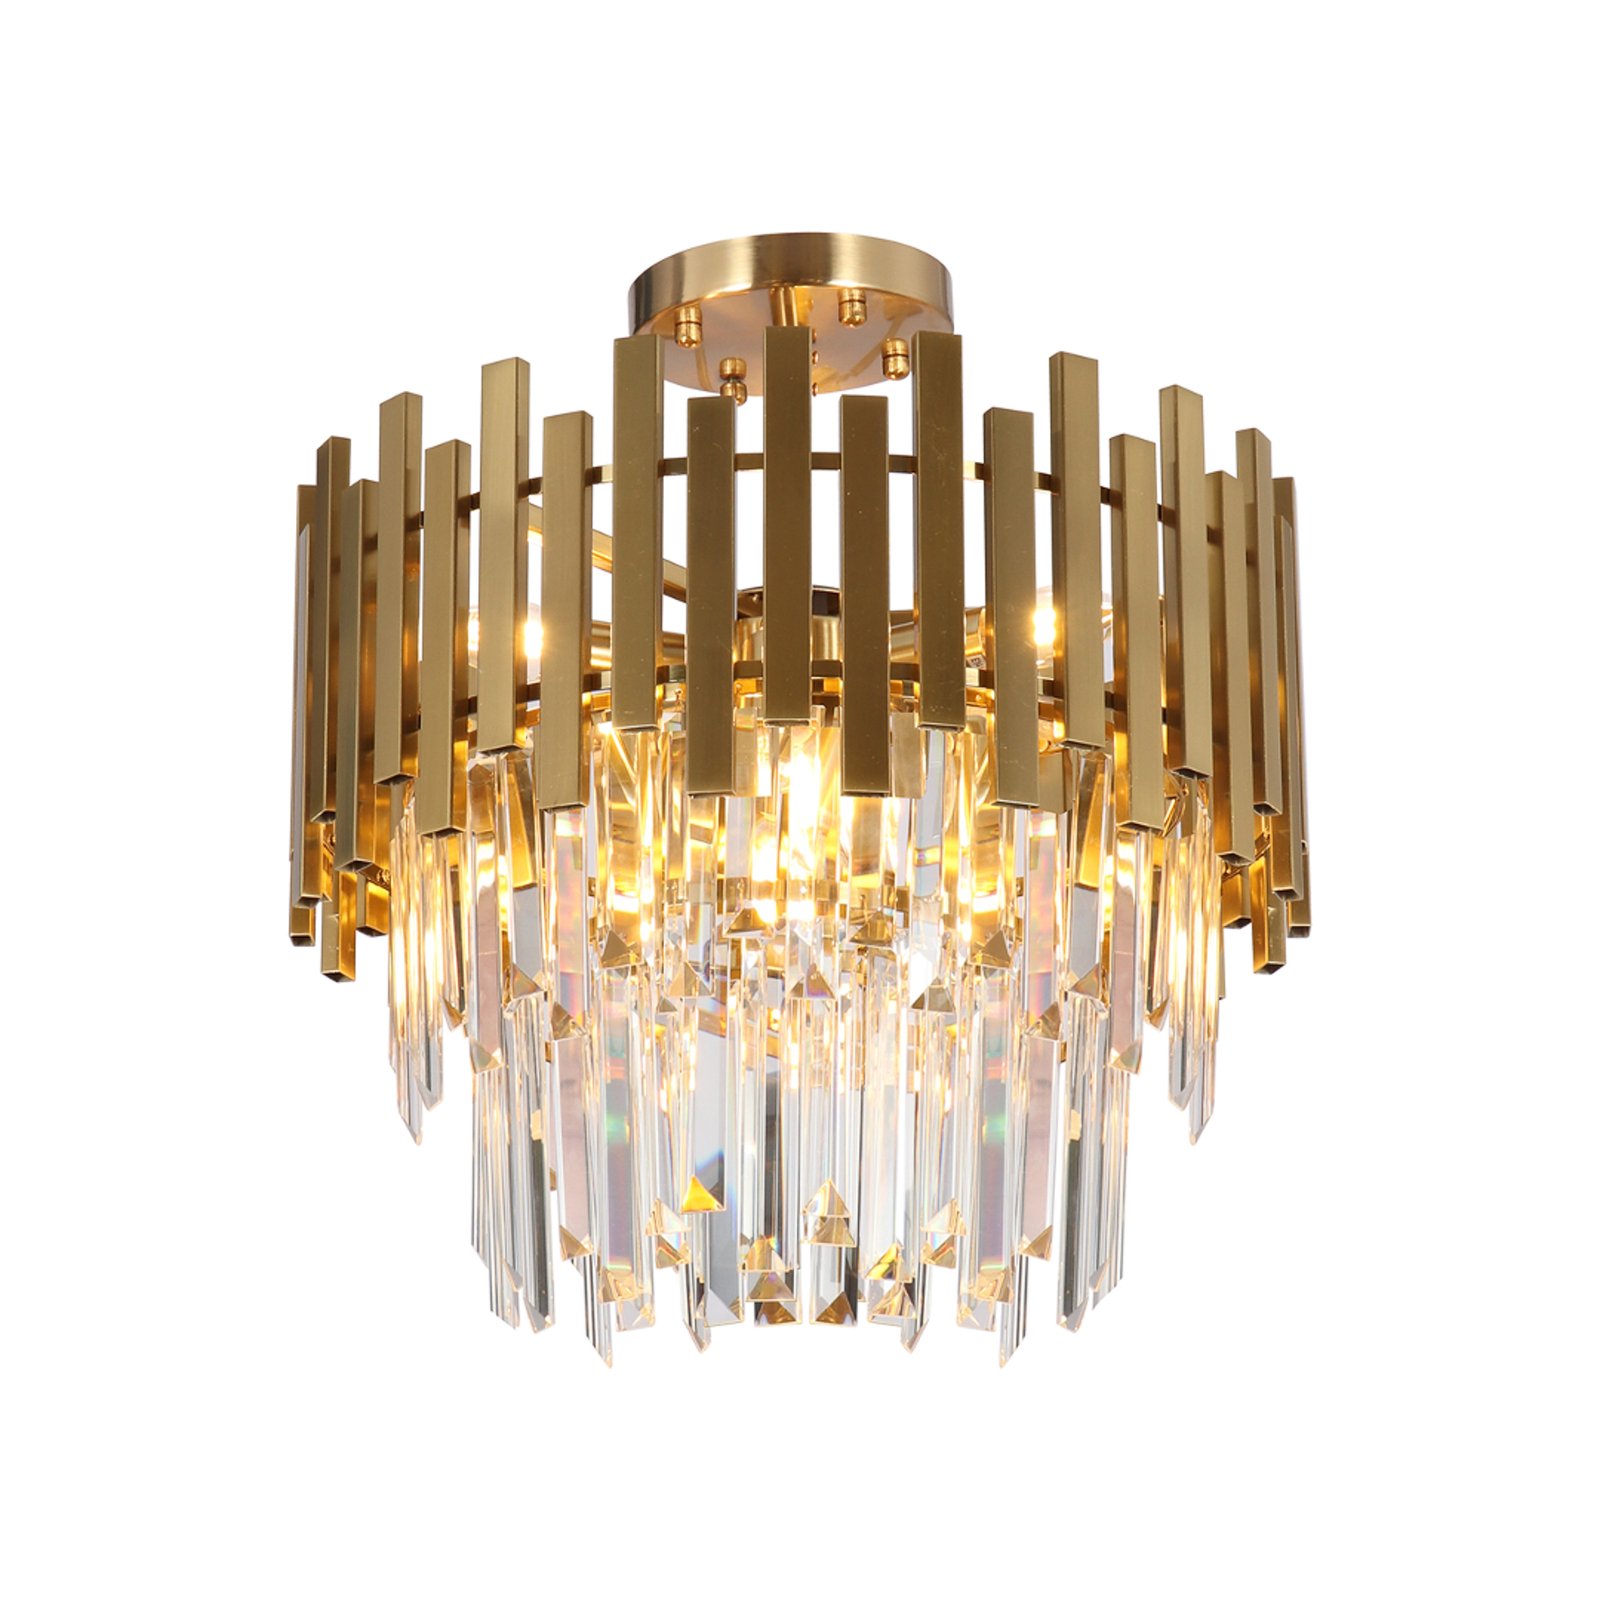 Lampa sufitowa Aspen, metal w kolorze złotym, szklane kryształy, Ø 45 cm